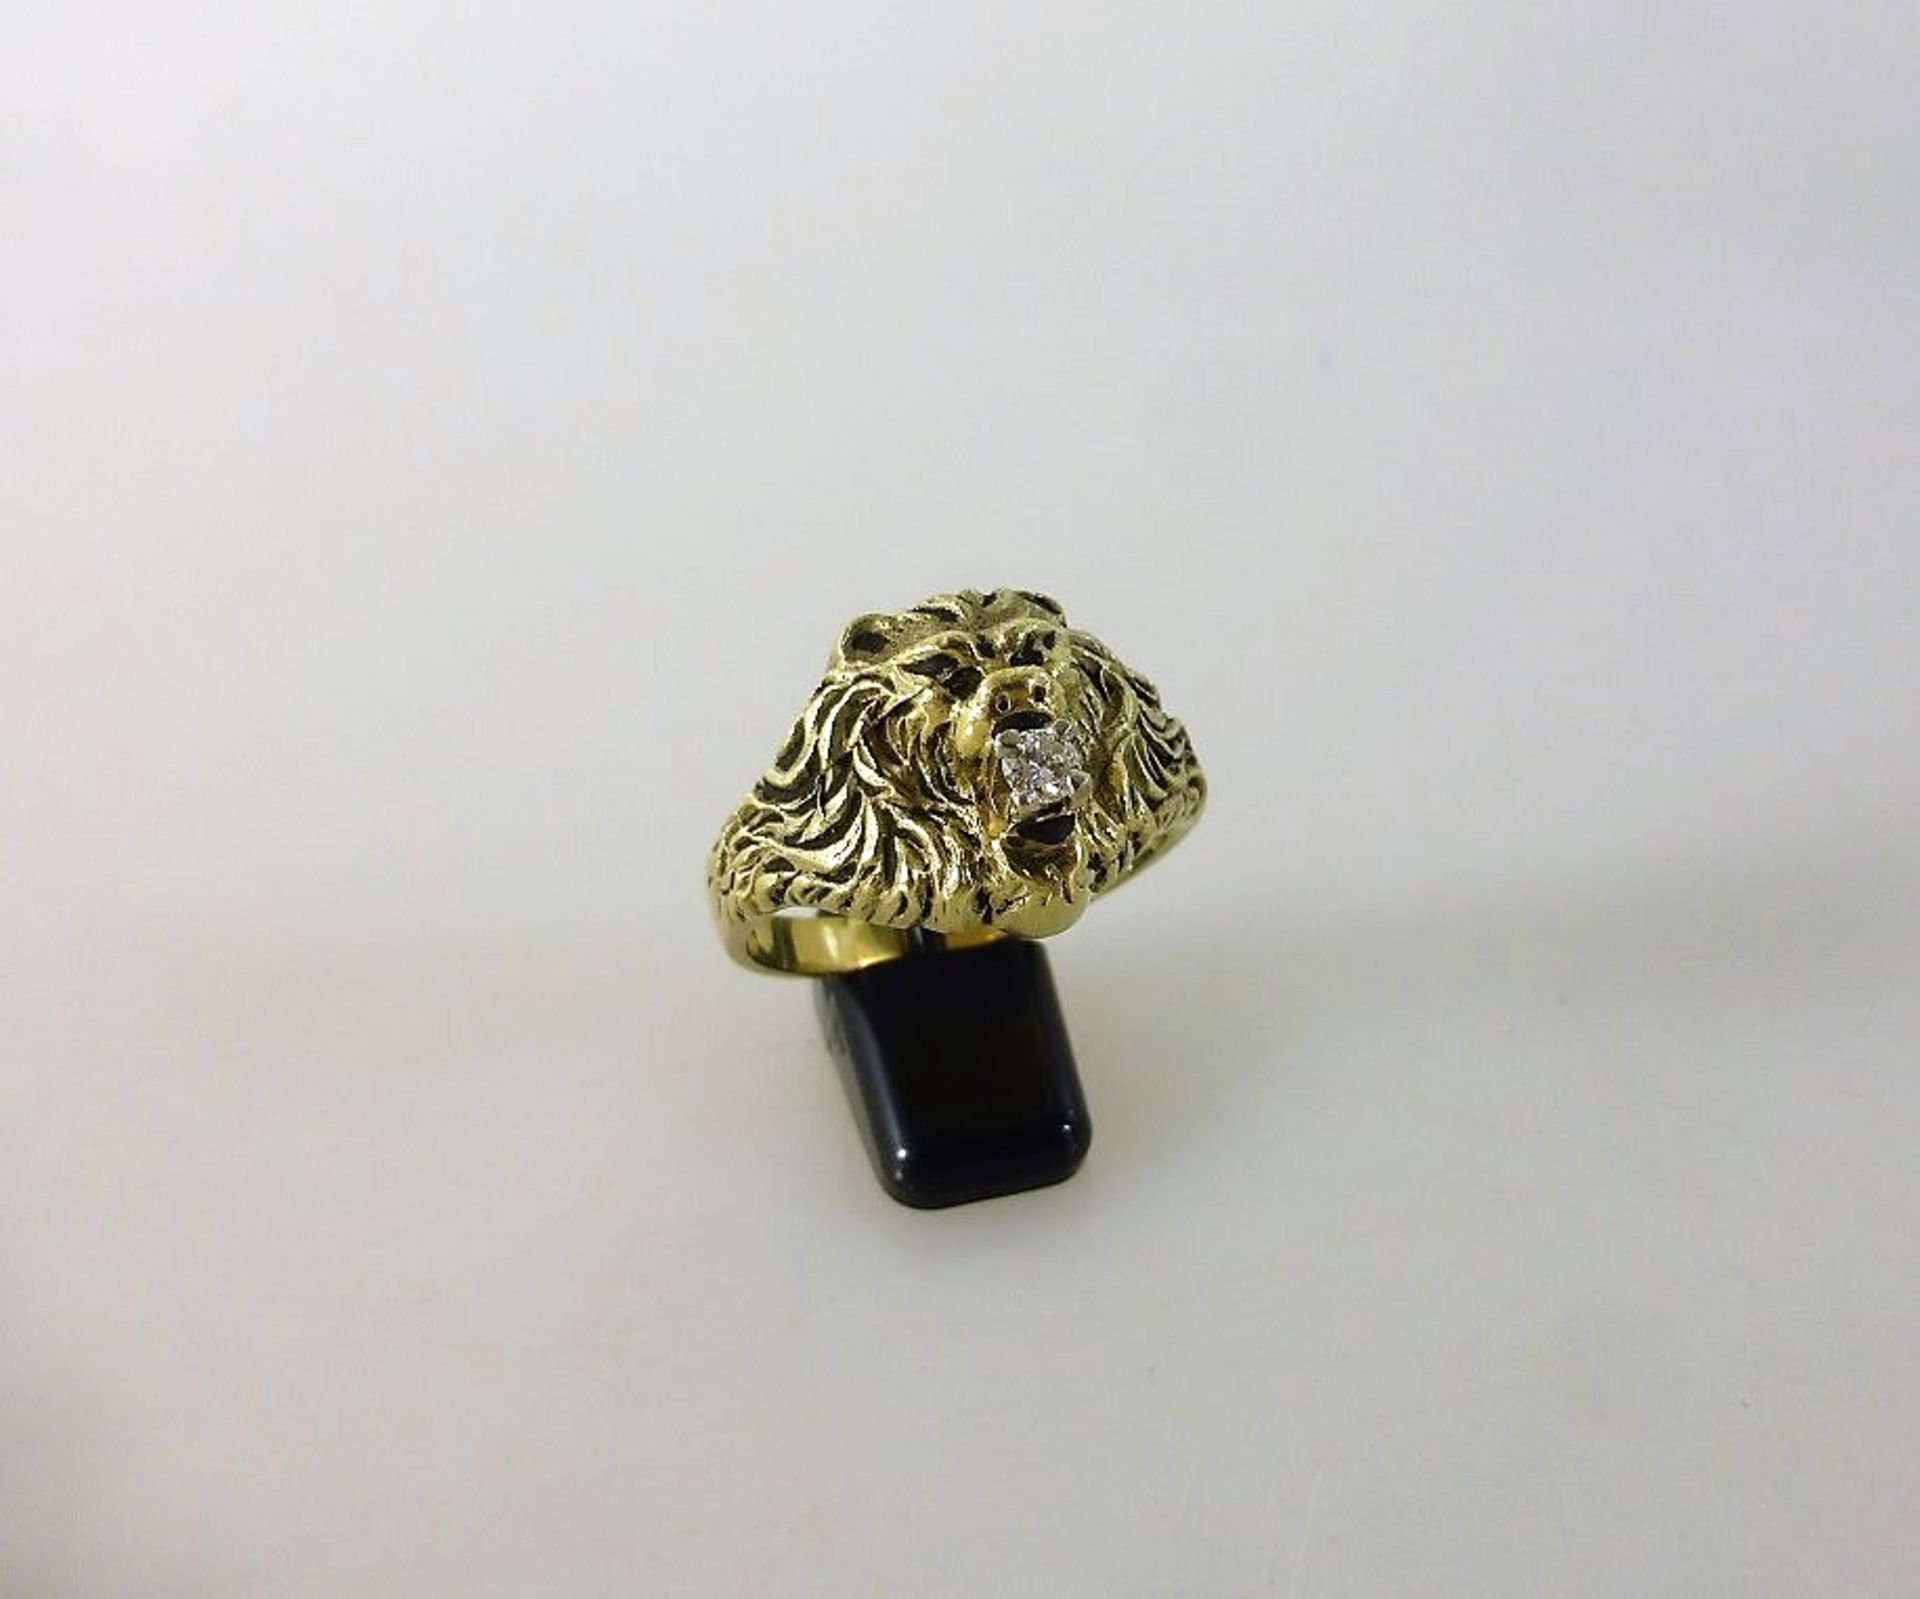 Löwenkopf Ring mit Diamant, Gelbgold 585, RG 21,5mm, 13,4g.- - -18.00 % buyer's premium on the